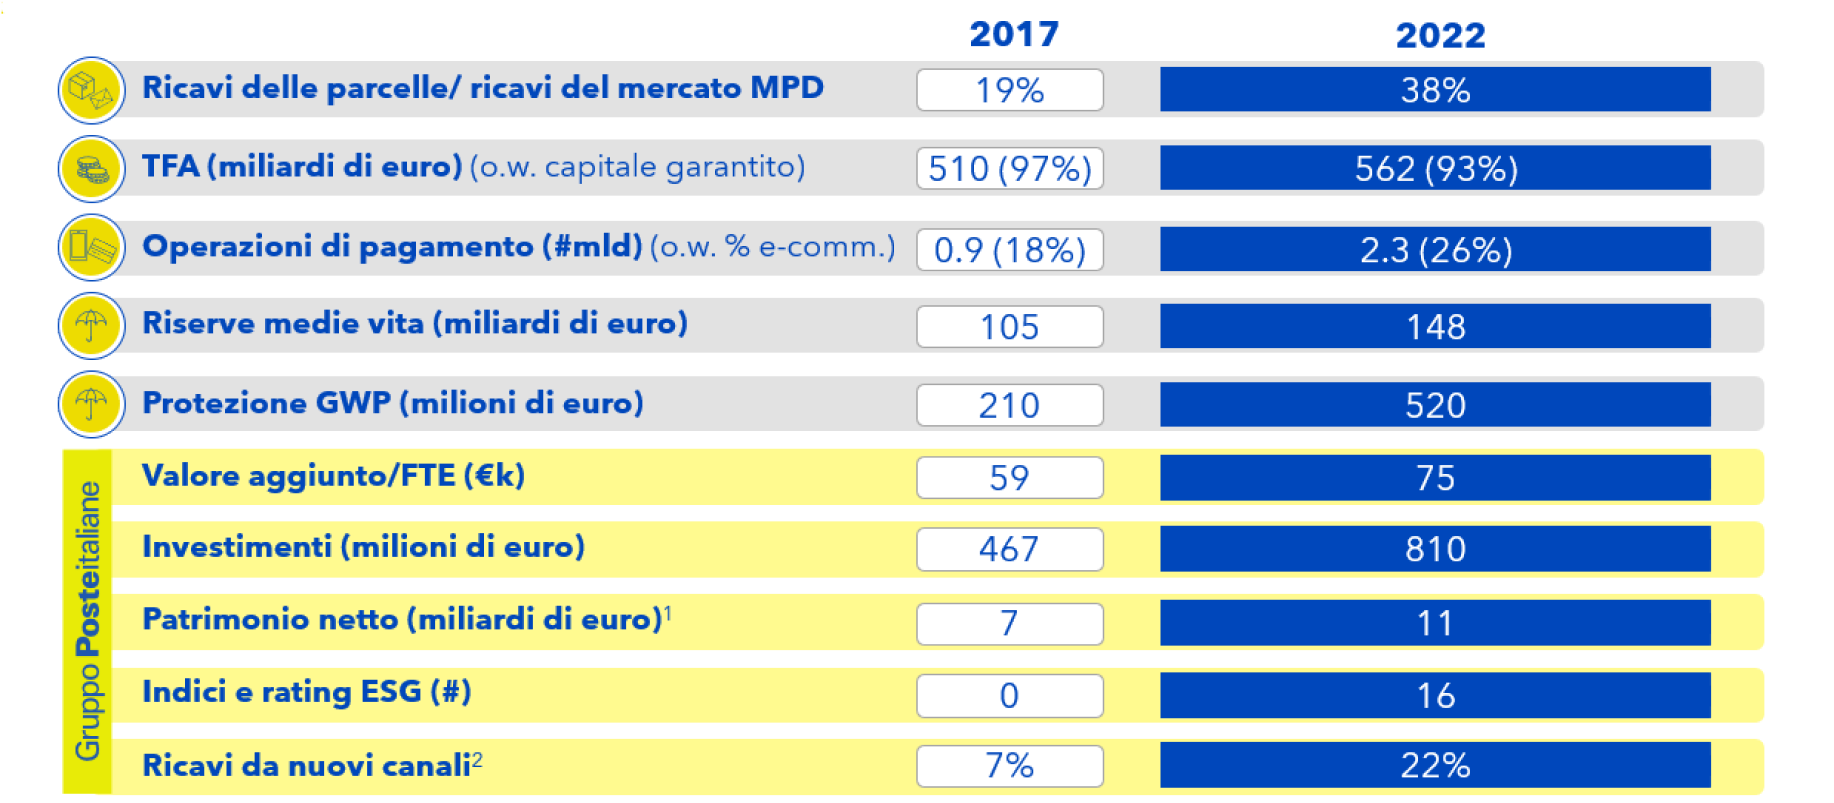 KPI STRATEGICI: Ricavi delle parcelle/ricavi del mercato MPD 2017: 19%; 2022: 38%. TFA (mld di €) 2017: 510 (97%); 2022 562 (93%). Operazioni di pagamento (mld) 2017: 0.9 (18%); 2022: 2.3 (26%). Riserve medie  vita (mld di €) 2017: 107; 2022: 148.